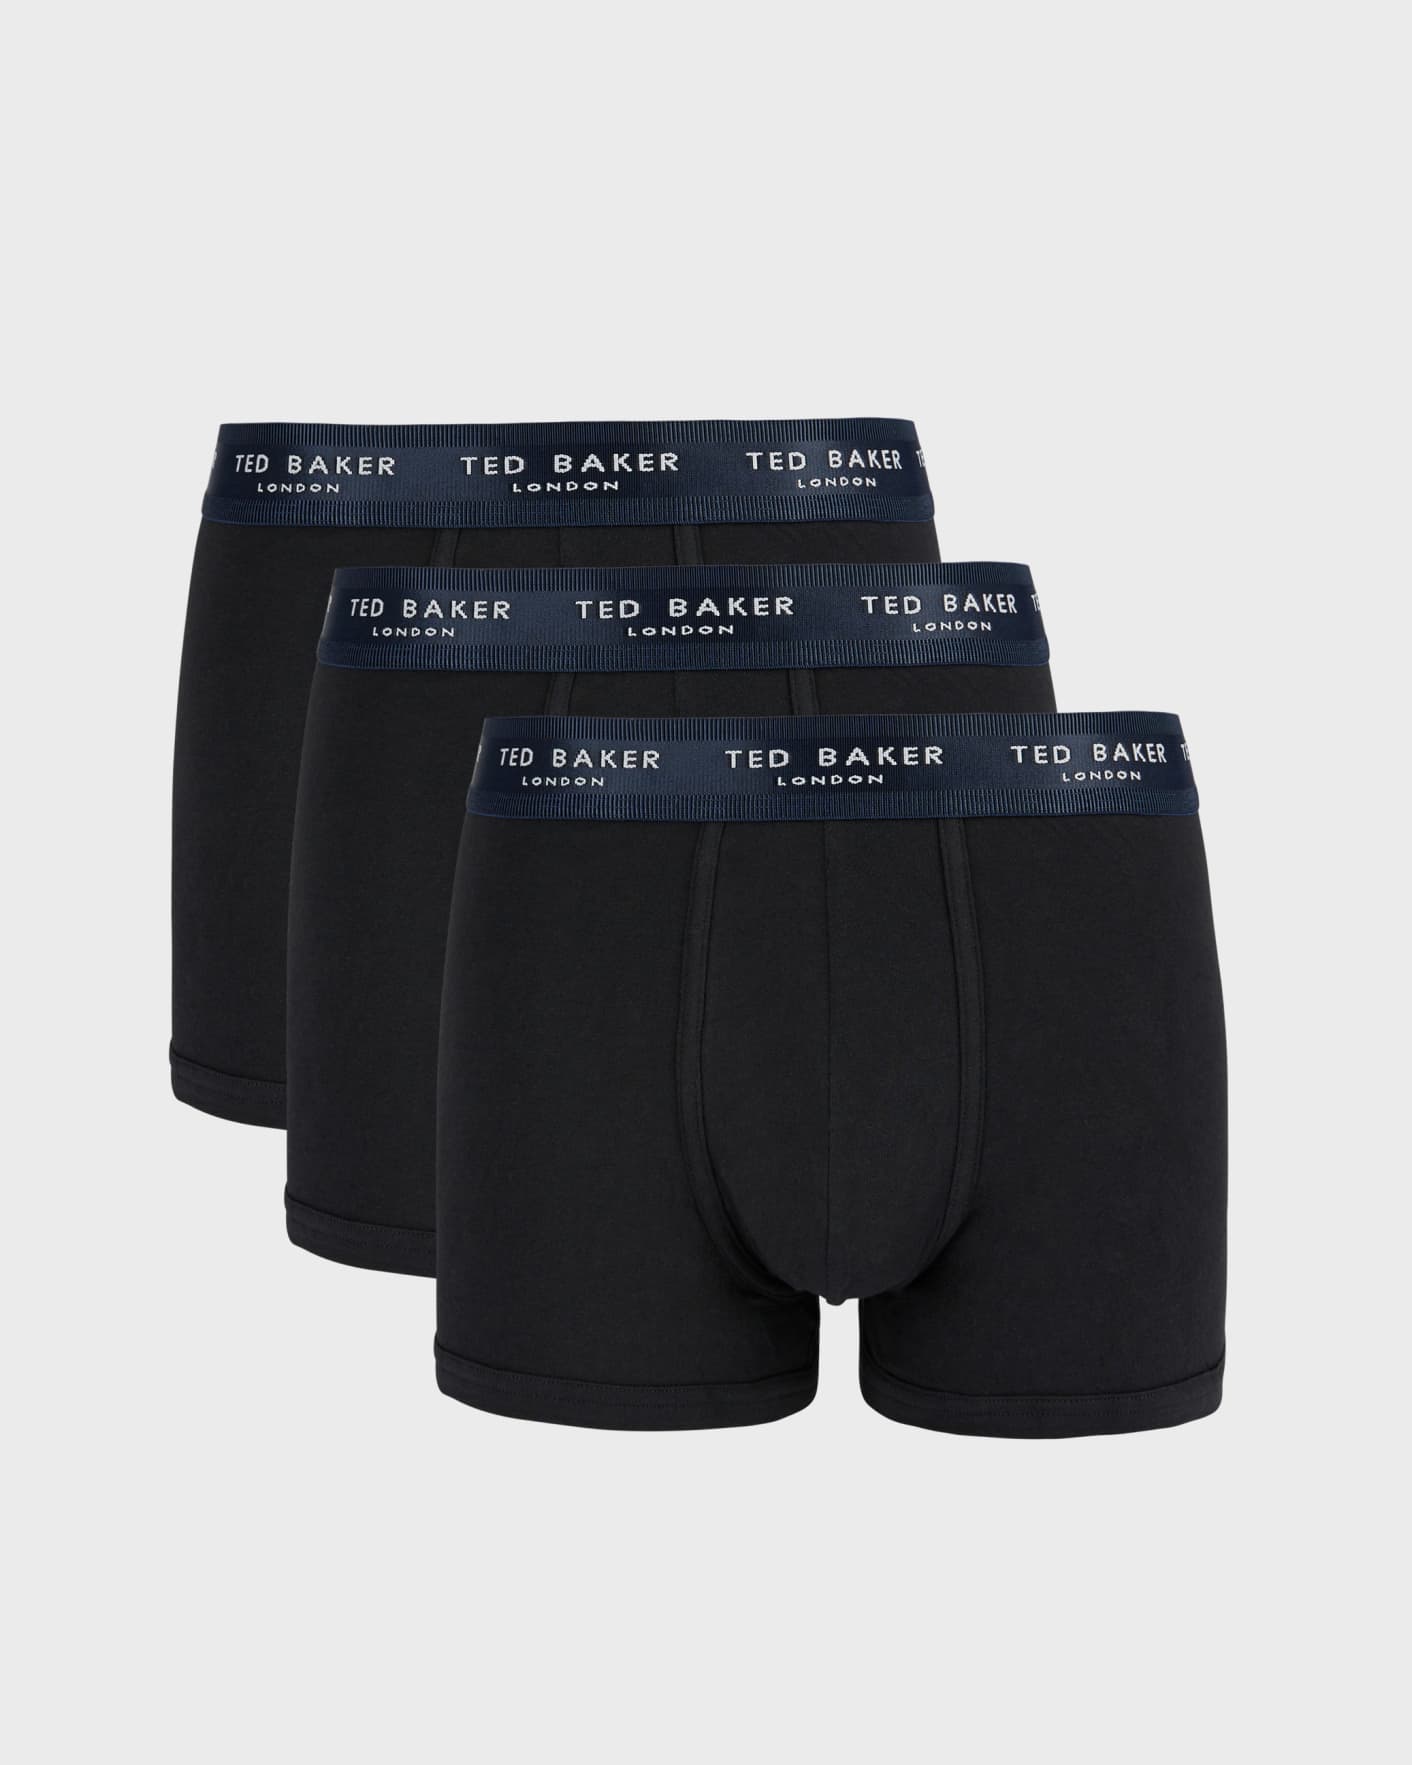 TED BAKER Underwear Mens Boxer Briefs 